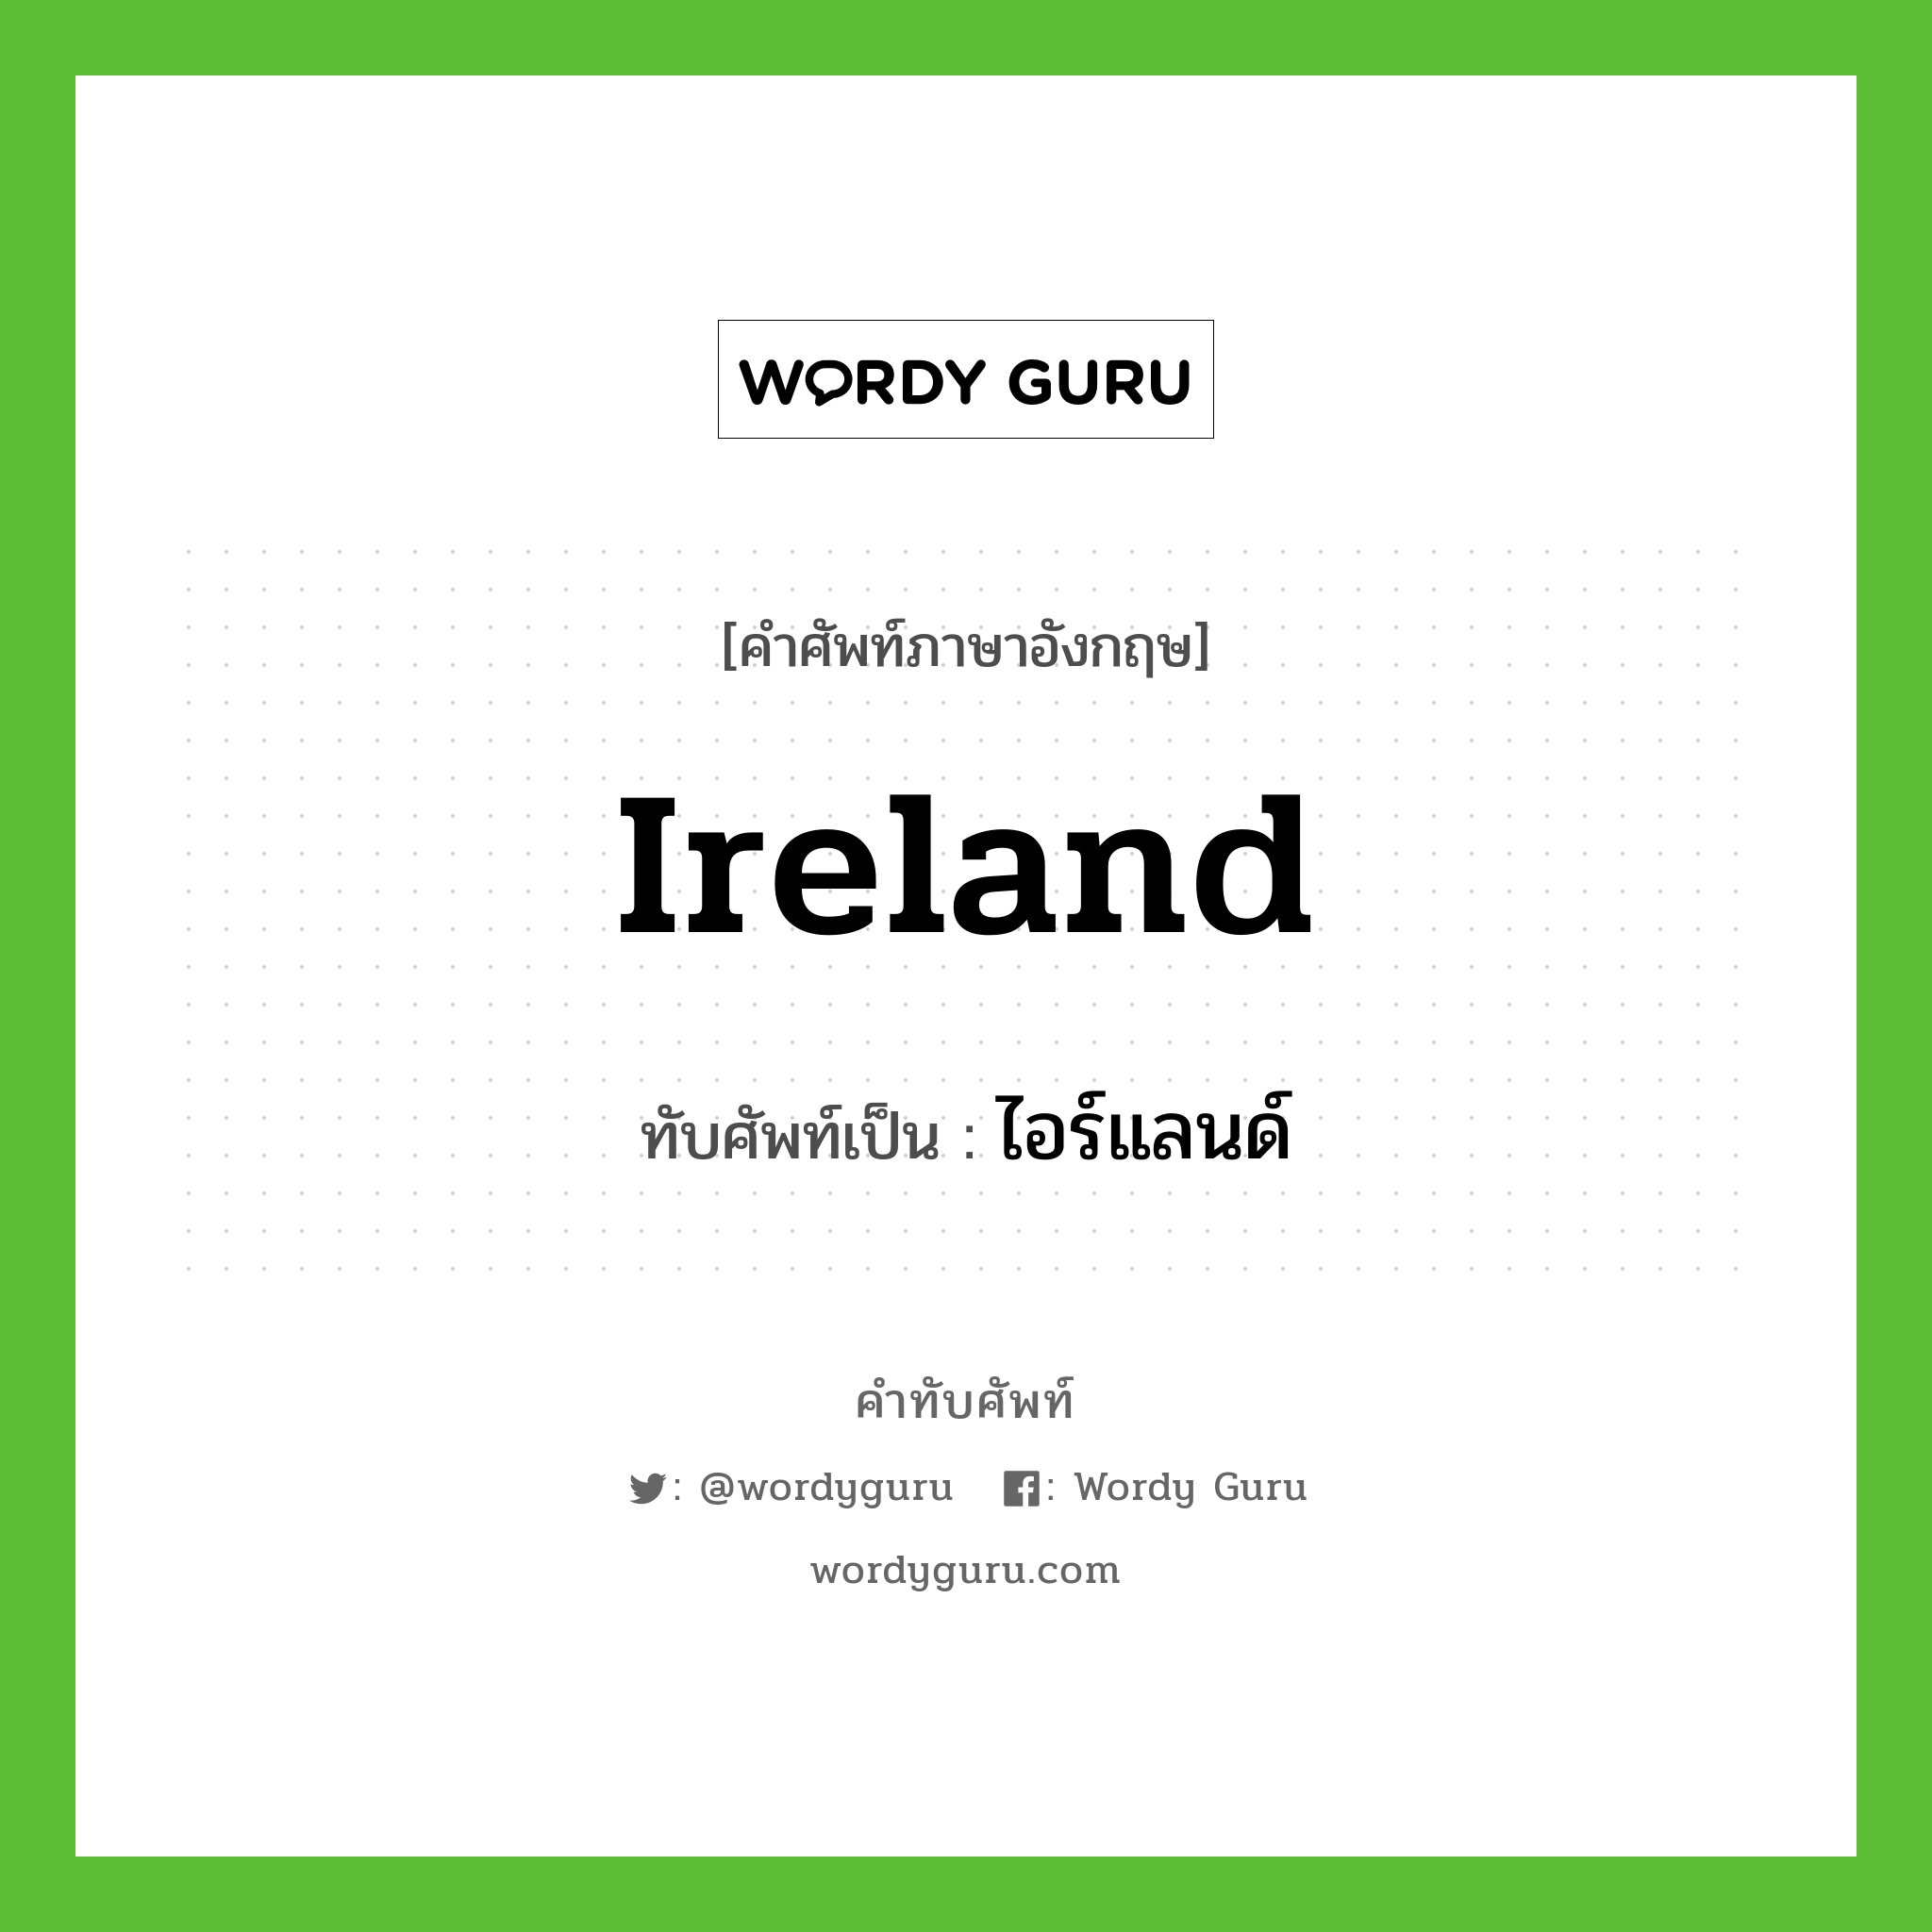 Ireland เขียนเป็นคำไทยว่าอะไร?, คำศัพท์ภาษาอังกฤษ Ireland ทับศัพท์เป็น ไอร์แลนด์